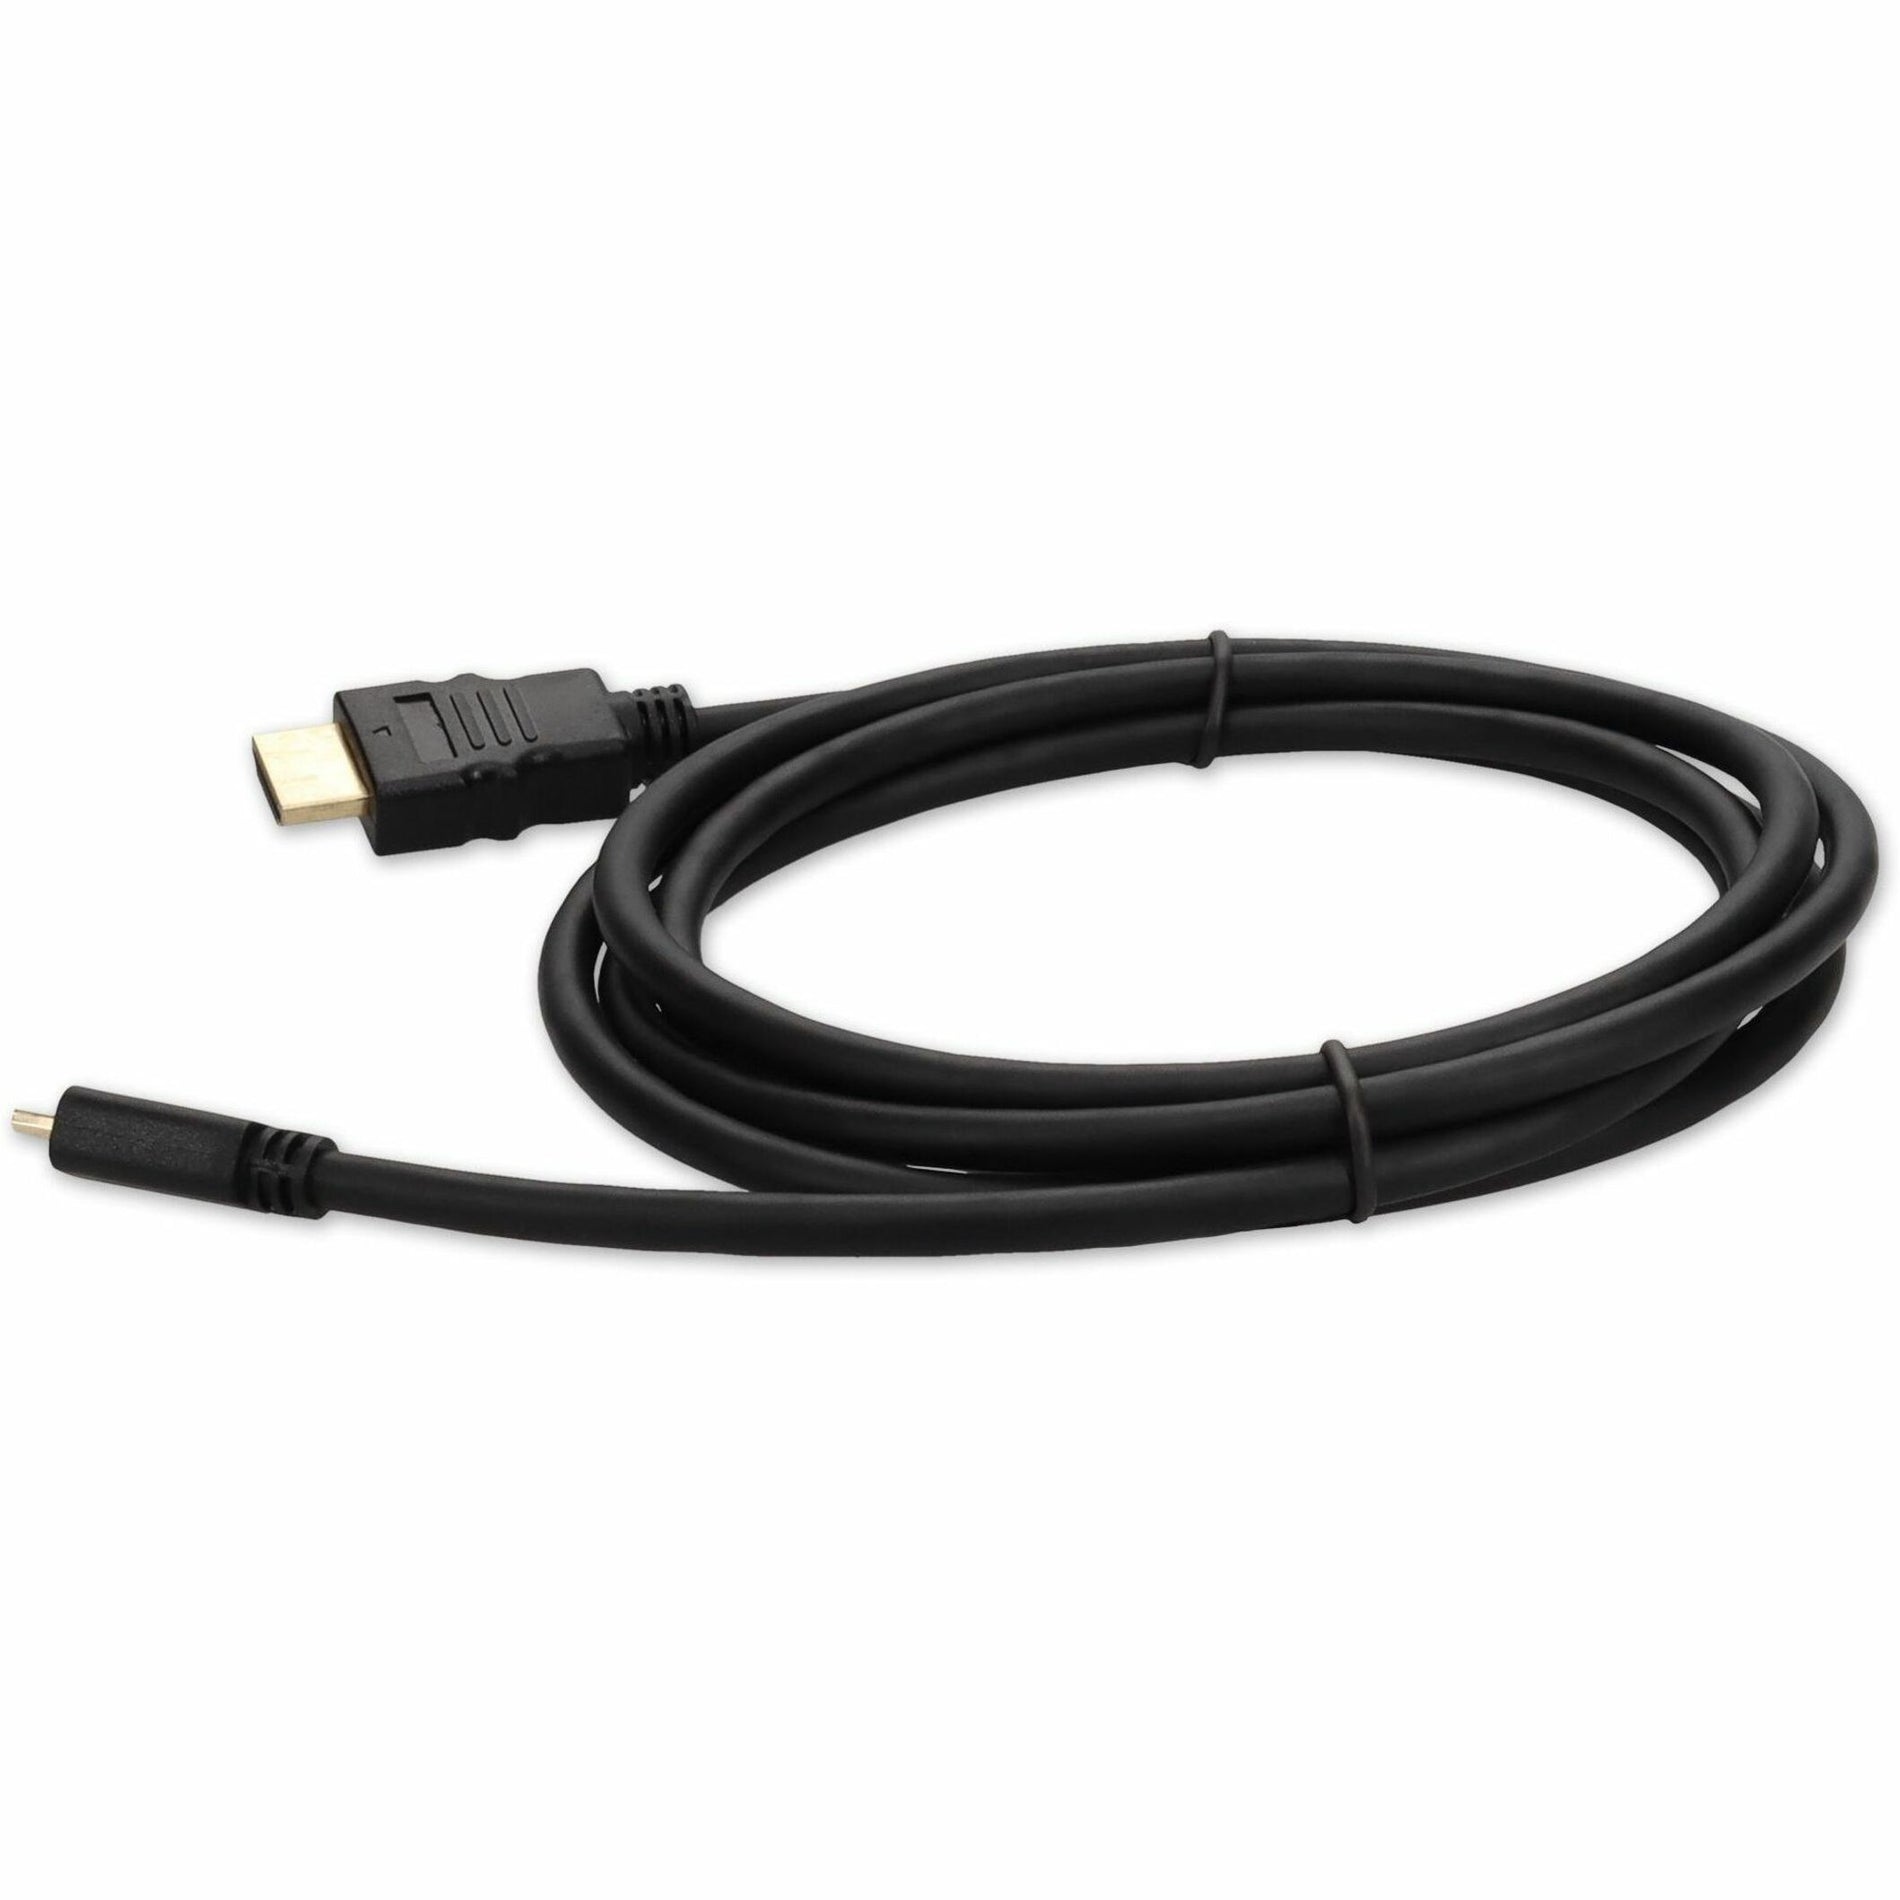 إضافة على HDMI2MHDMI3 3 قدم (30 سم) HDMI إلى محول Micro-HDMI كبل - ذكر إلى ذكر ، موصل نحاس ، طول الكابل 3 أقدام ، أسود  اسم العلامة التجارية: AddOn